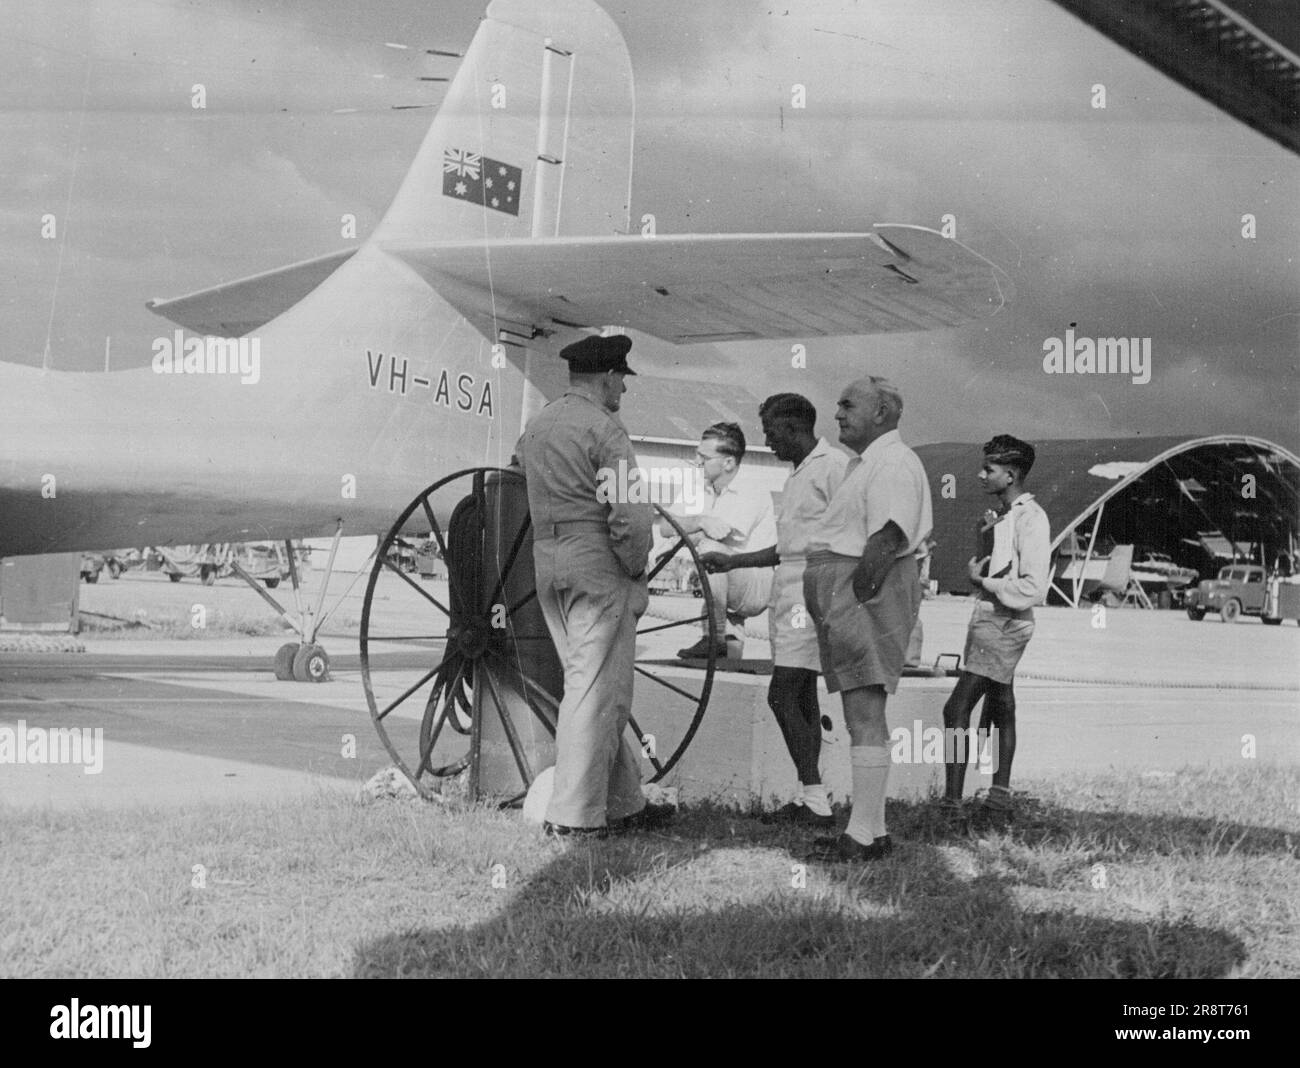 Capitano P.G. Taylor's Survey Flight per il Cile. Laucala Bay Airport, Suva, prima del decollo per Apia, 17 marzo 1951. Ingegnere di volo, E.l'Huillier, parla con A. Wills, ingegnere di una delle compagnie petrolifere. 1 gennaio 1951. Foto Stock